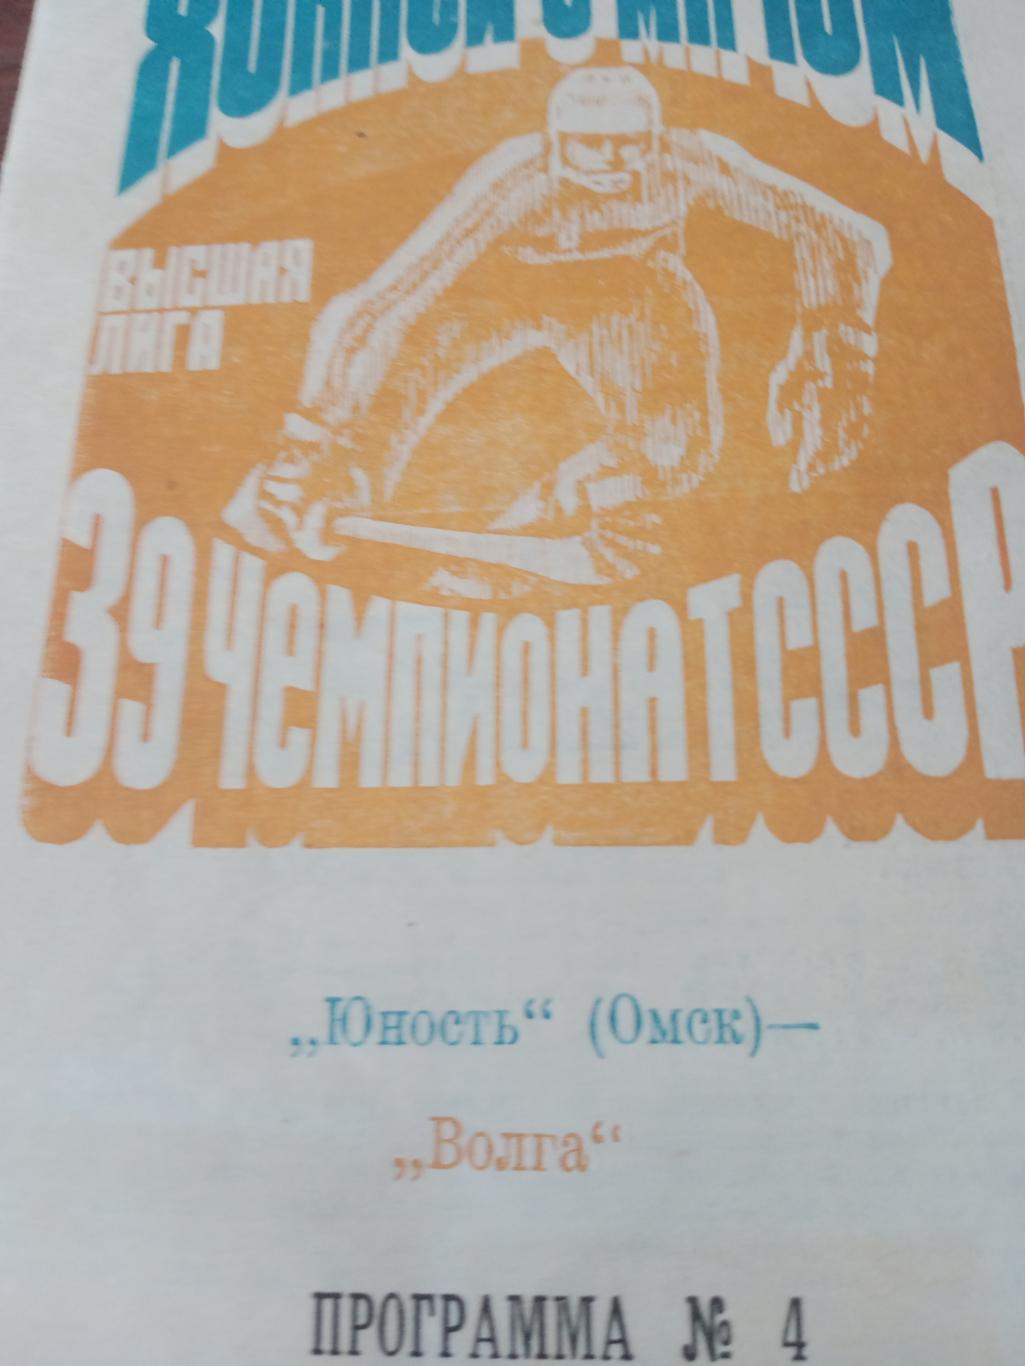 + Газетный отчет. Юность Омск - Волга Ульяновск. 30 ноября 1986 год